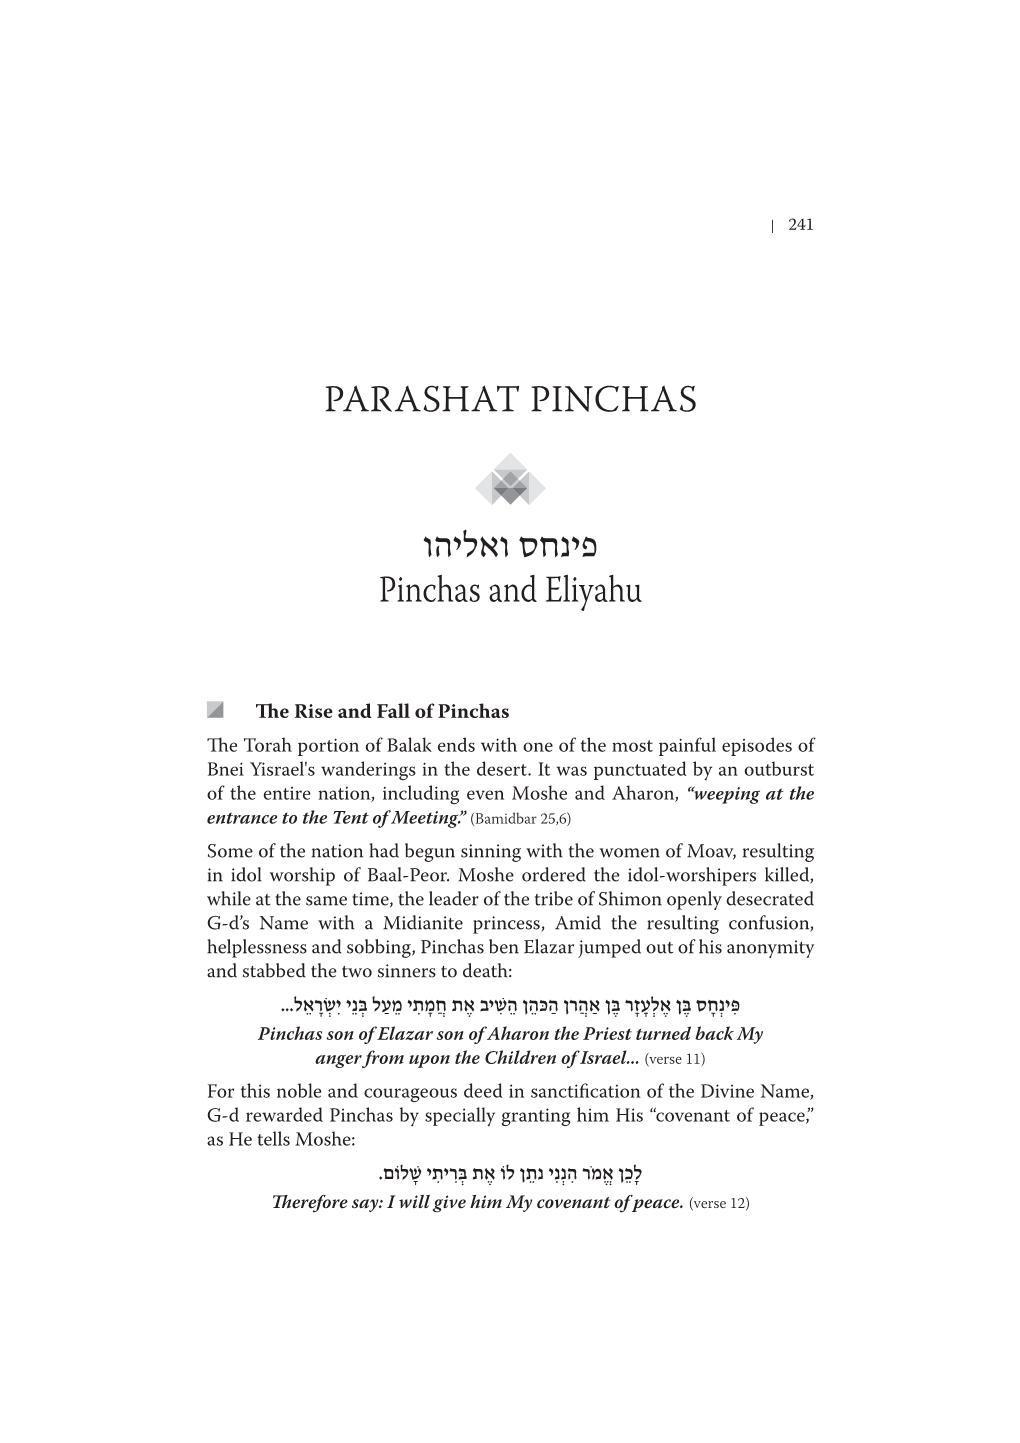 PARASHAT PINCHAS Pinchas and Eliyahu